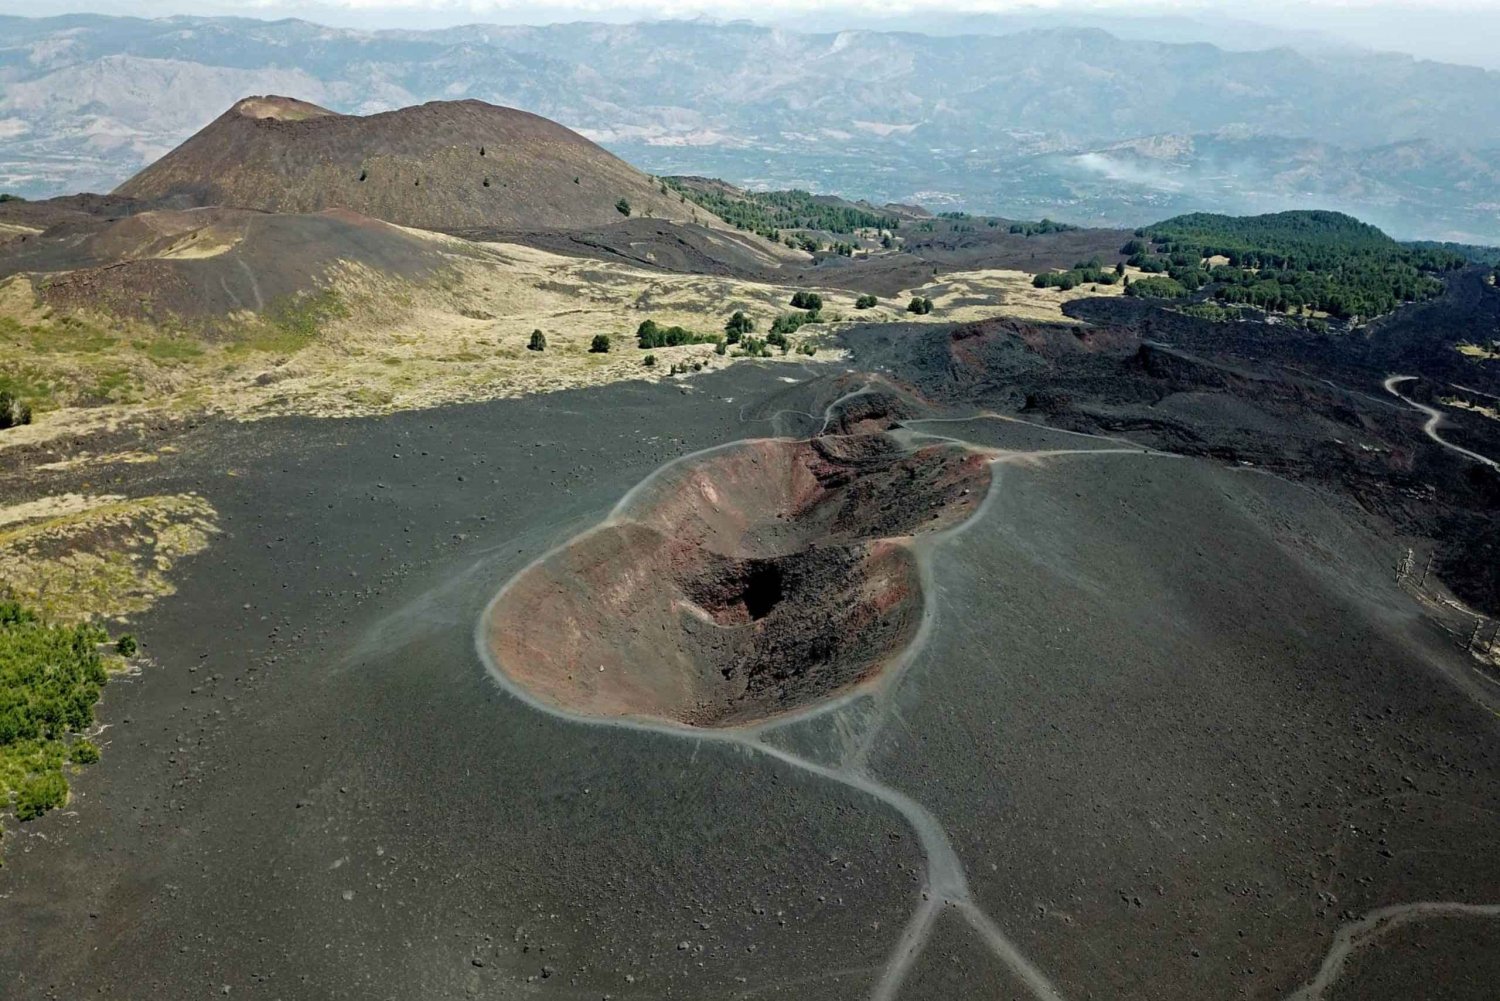 Etna 1800mt y Gargantas de Alcántara